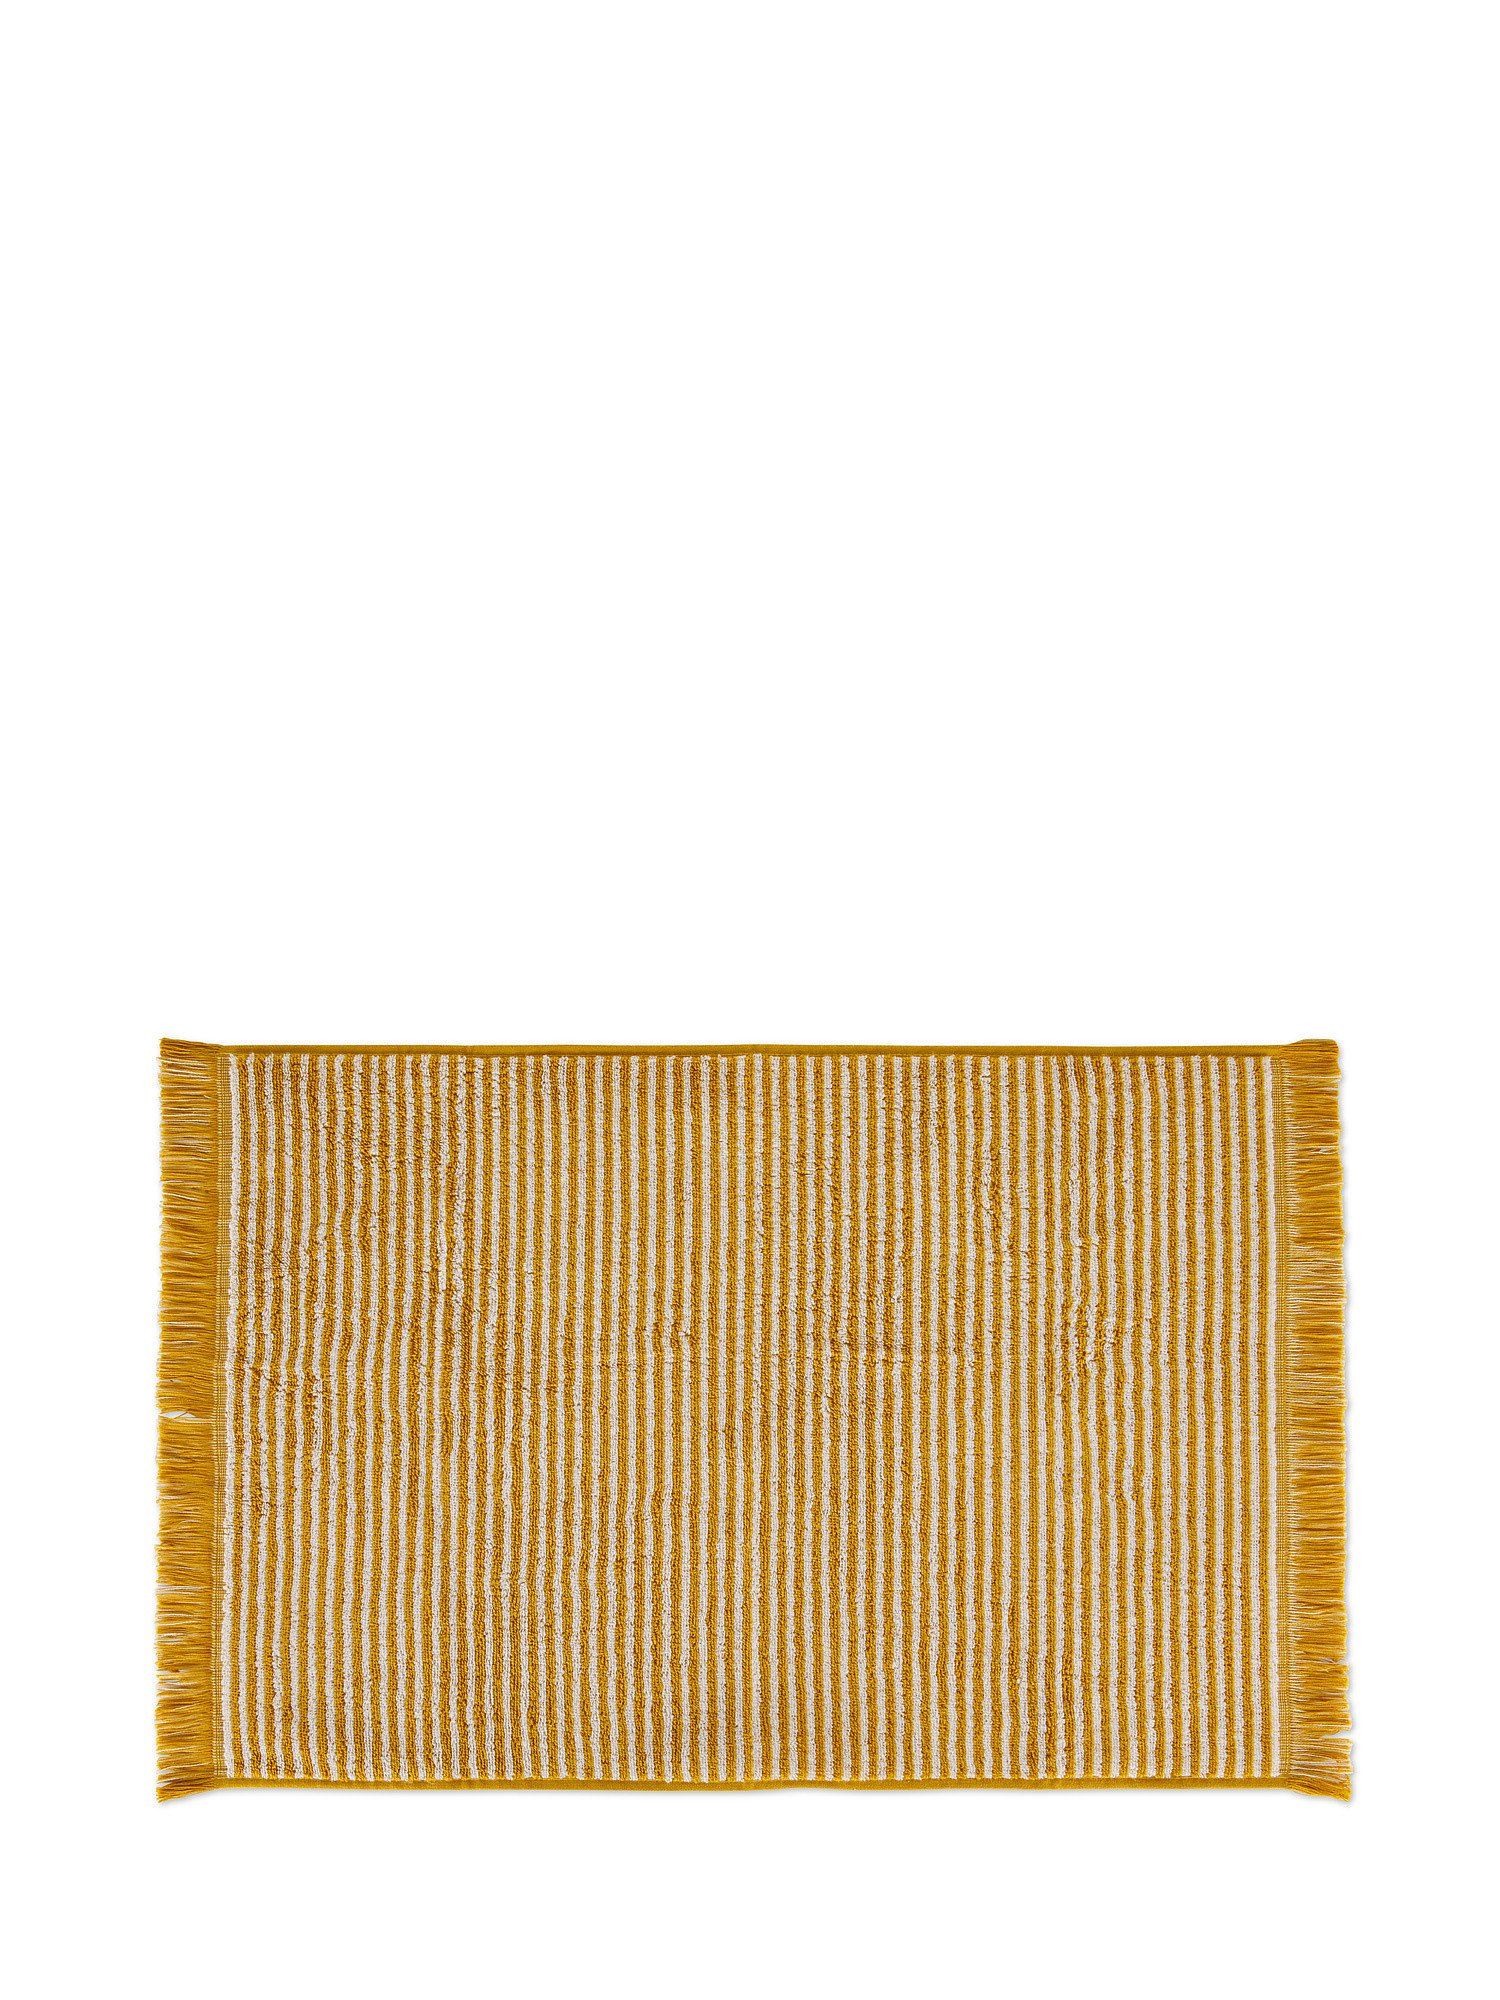 Asciugamano spugna di cotone a righe, Giallo scuro, large image number 1